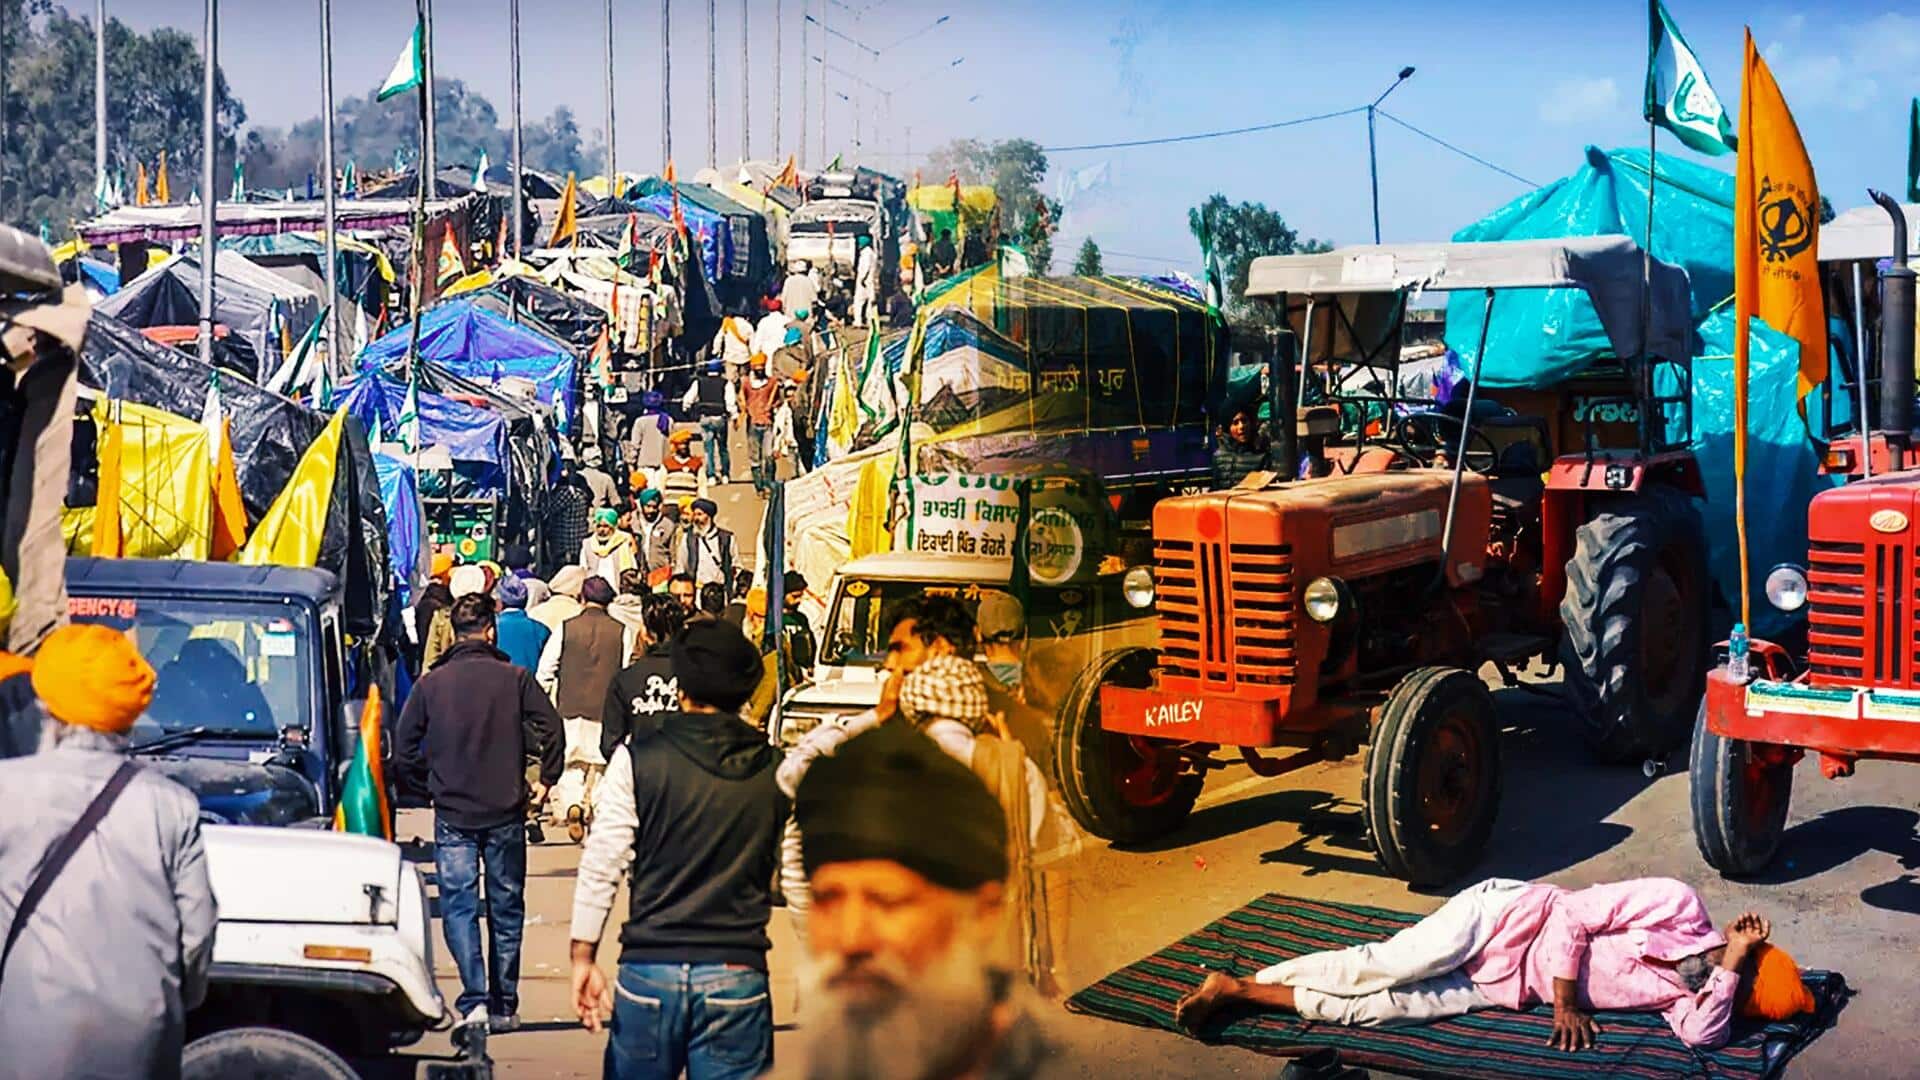 दिल्ली की ओर बढ़ने के लिए ट्रैक्टर मार्च निकालेंगे किसान, ट्रैफिक दिशानिर्देश जारी